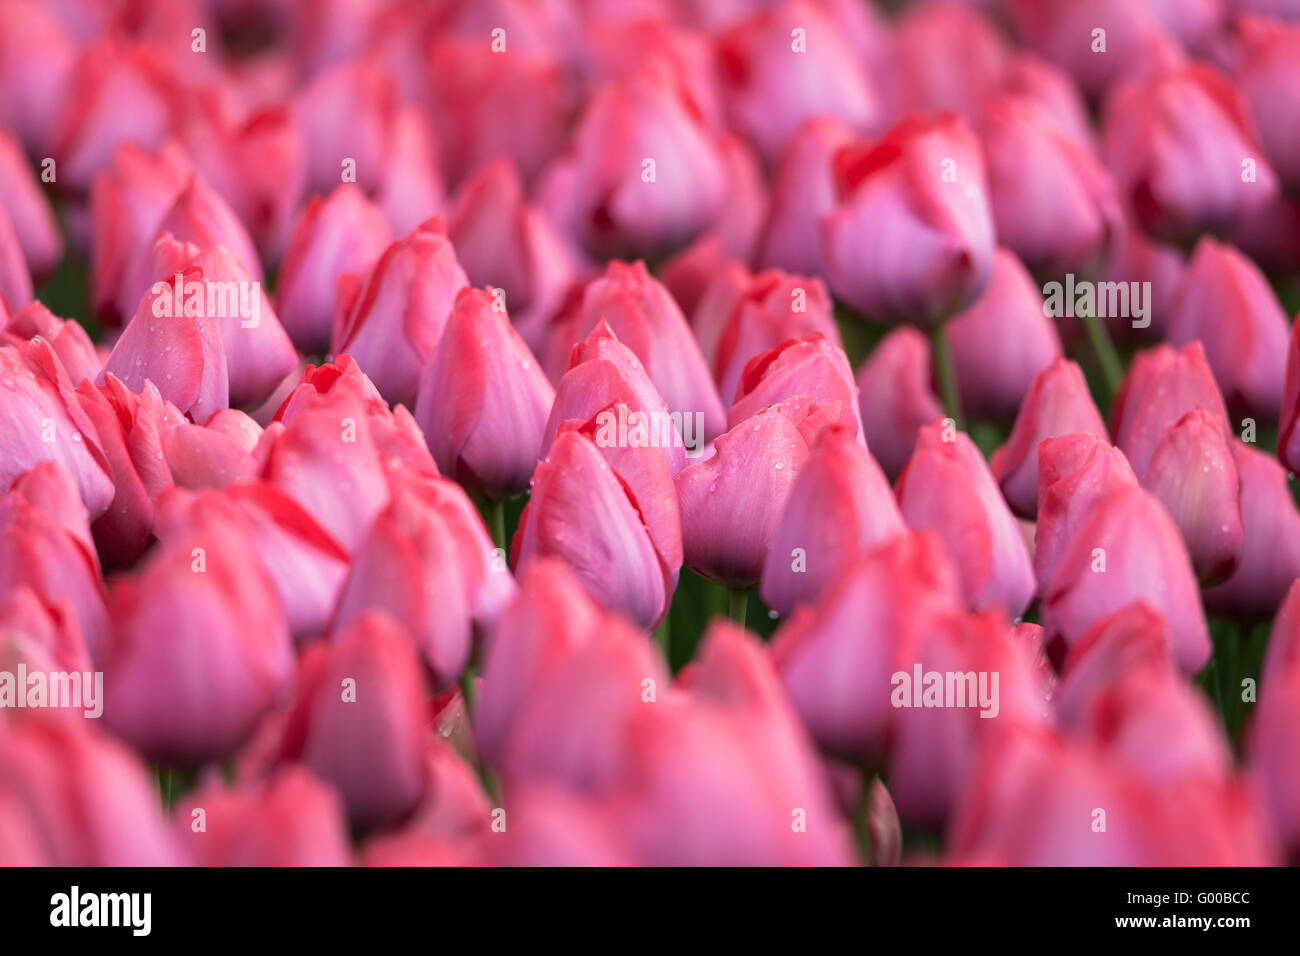 Tulip. Belle tulipe rose coloré des fleurs au printemps, le jardin floral background dynamique Banque D'Images